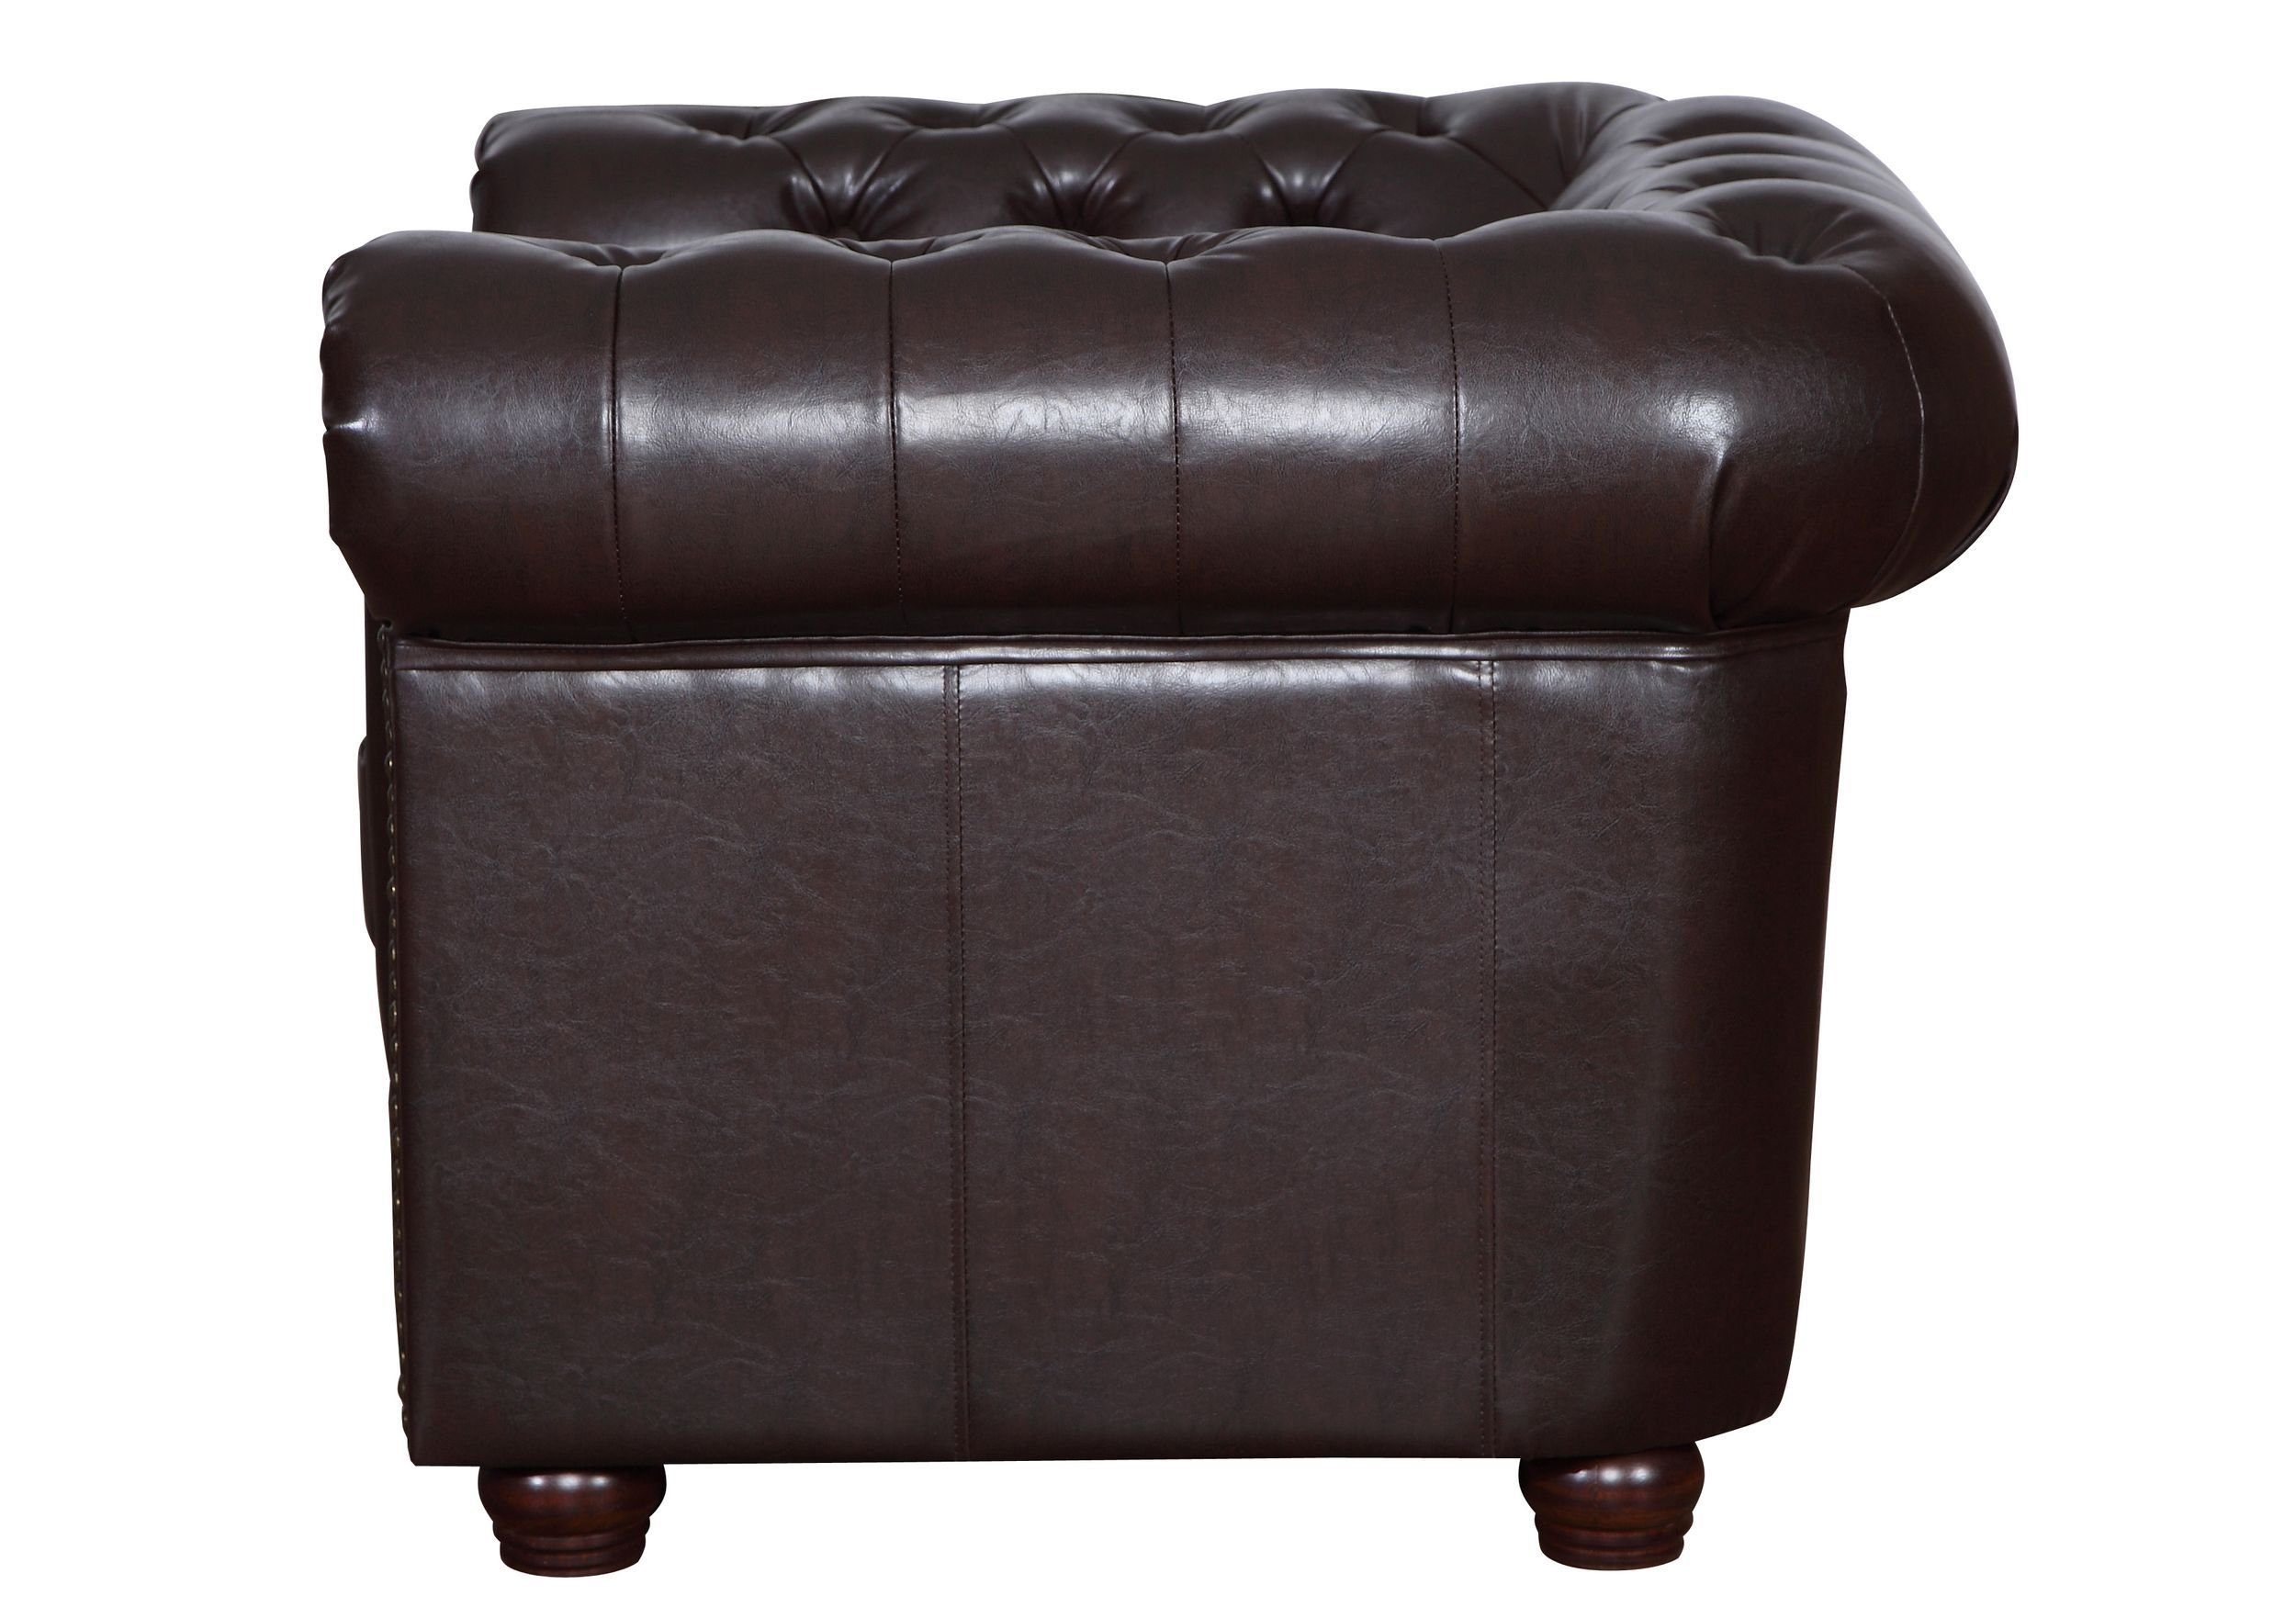 Küchen-Preisbombe Sessel 1 Sitzer Polstersofa Couch in Vintage Sofa Kunstleder braun